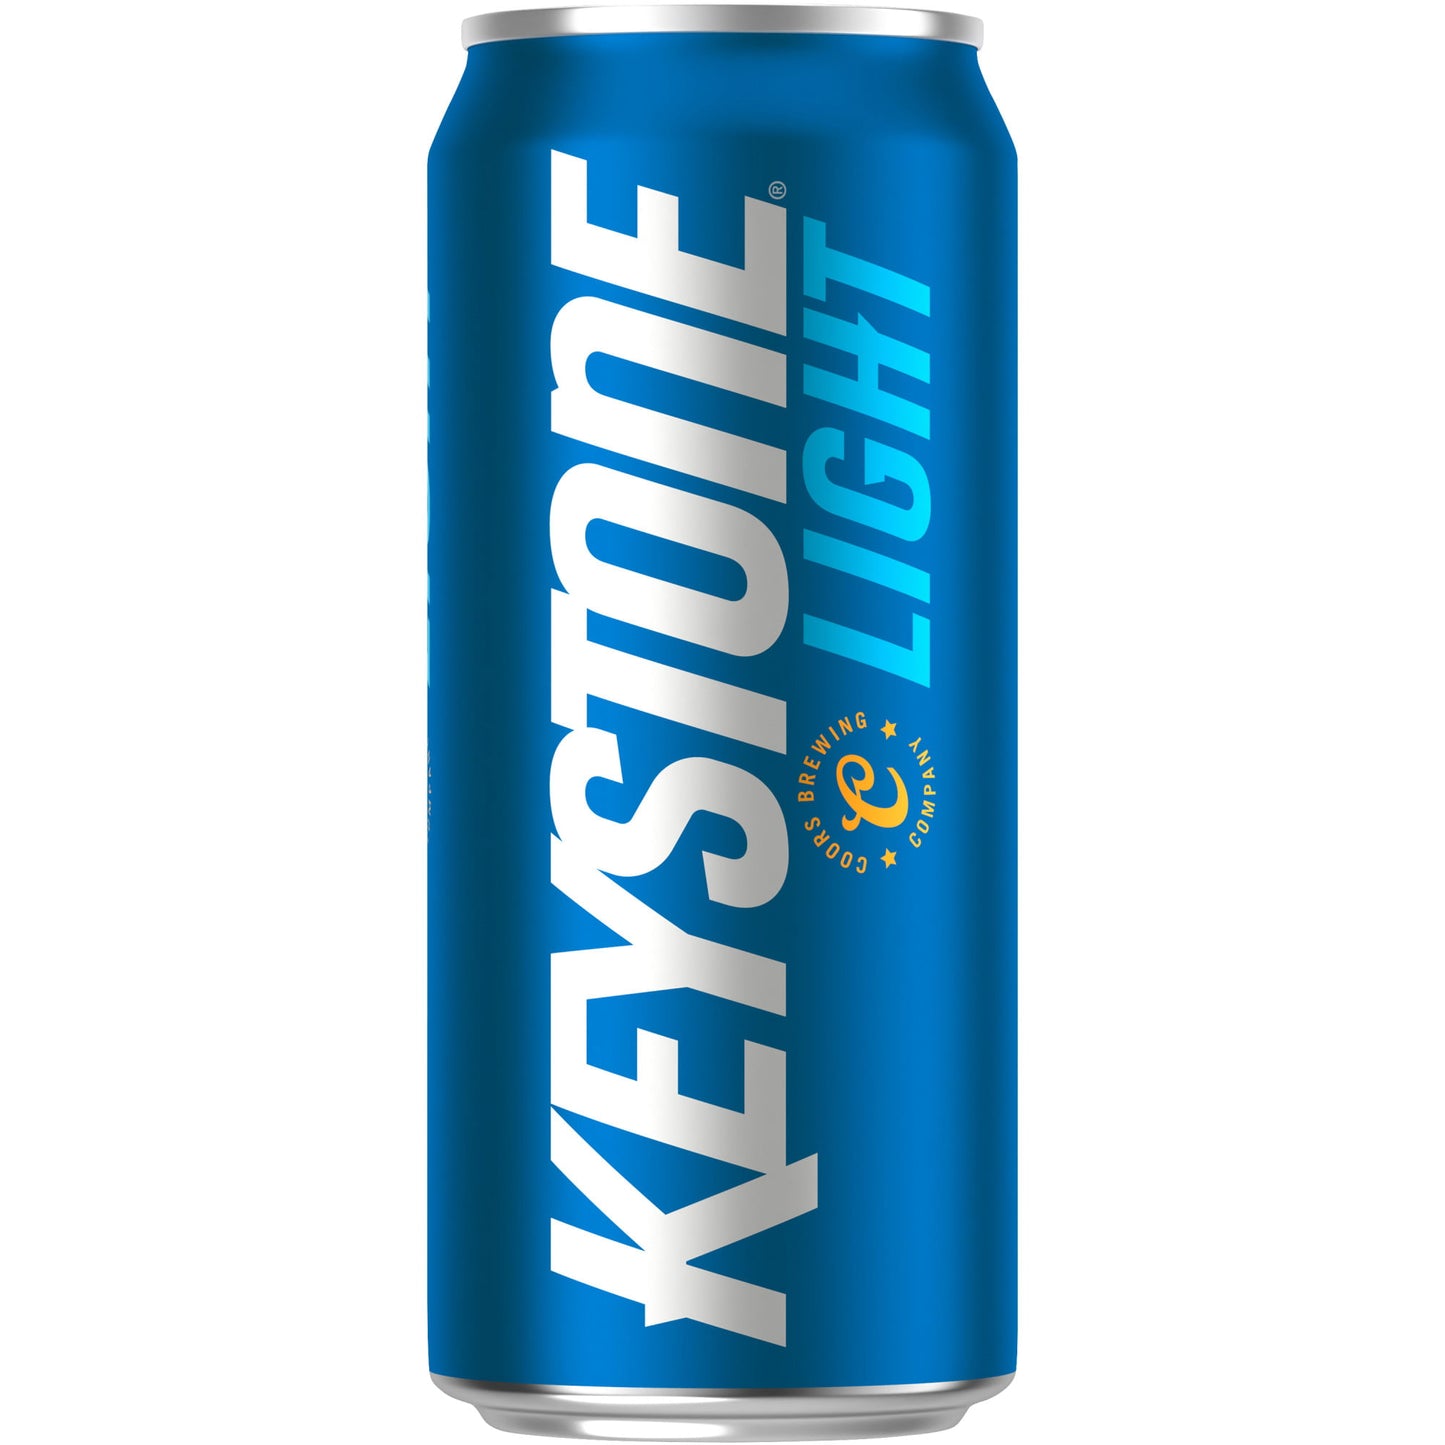 Keystone Light Lager Beer, 6 Pack, 16 fl oz Cans, 4.1% ABV